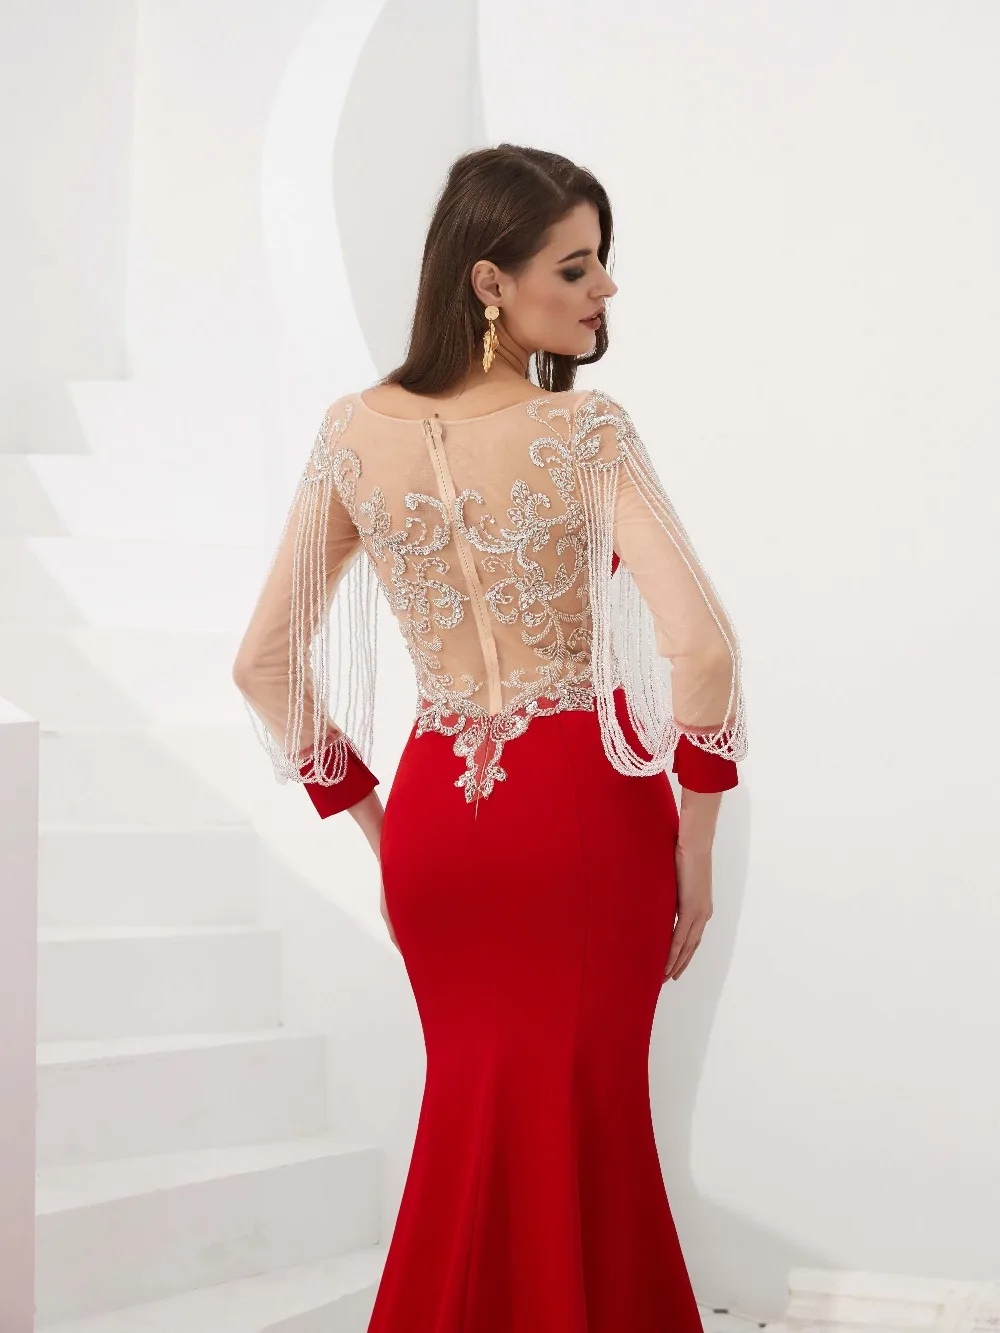 Lakshmigown элегантный красный с длинным рукавом Русалка Вечерние платья развертки поезд торжественное платье для женщин